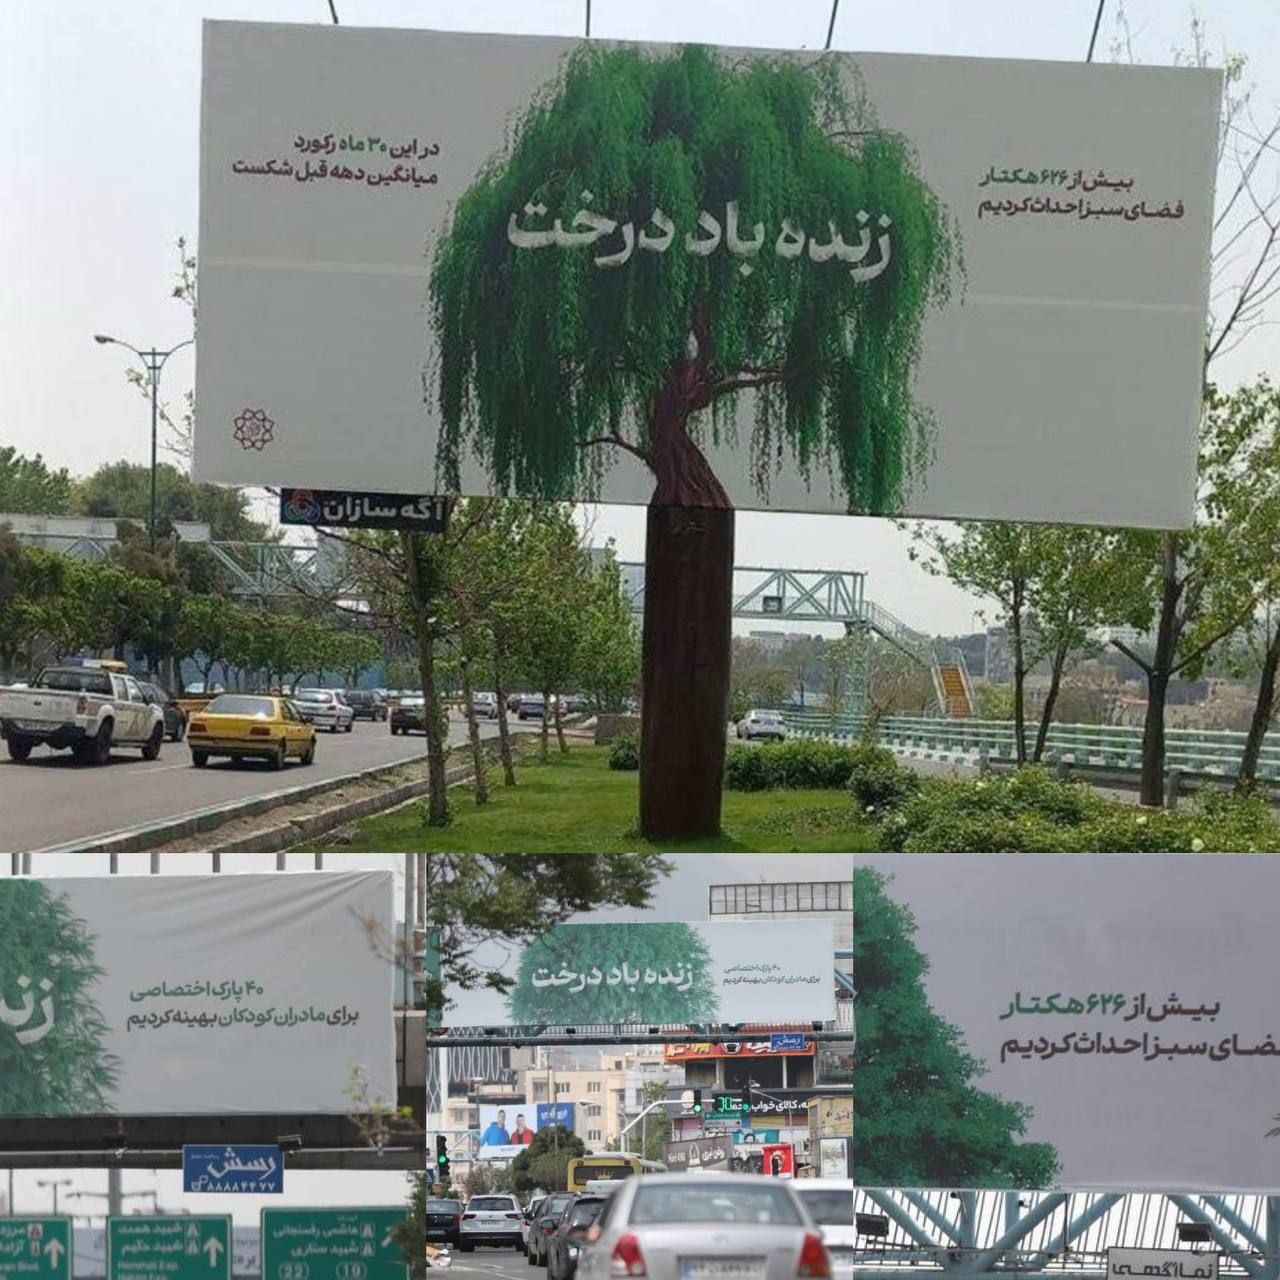 بیلبورد خلاقانه شهرداری تهران در مورد درخت